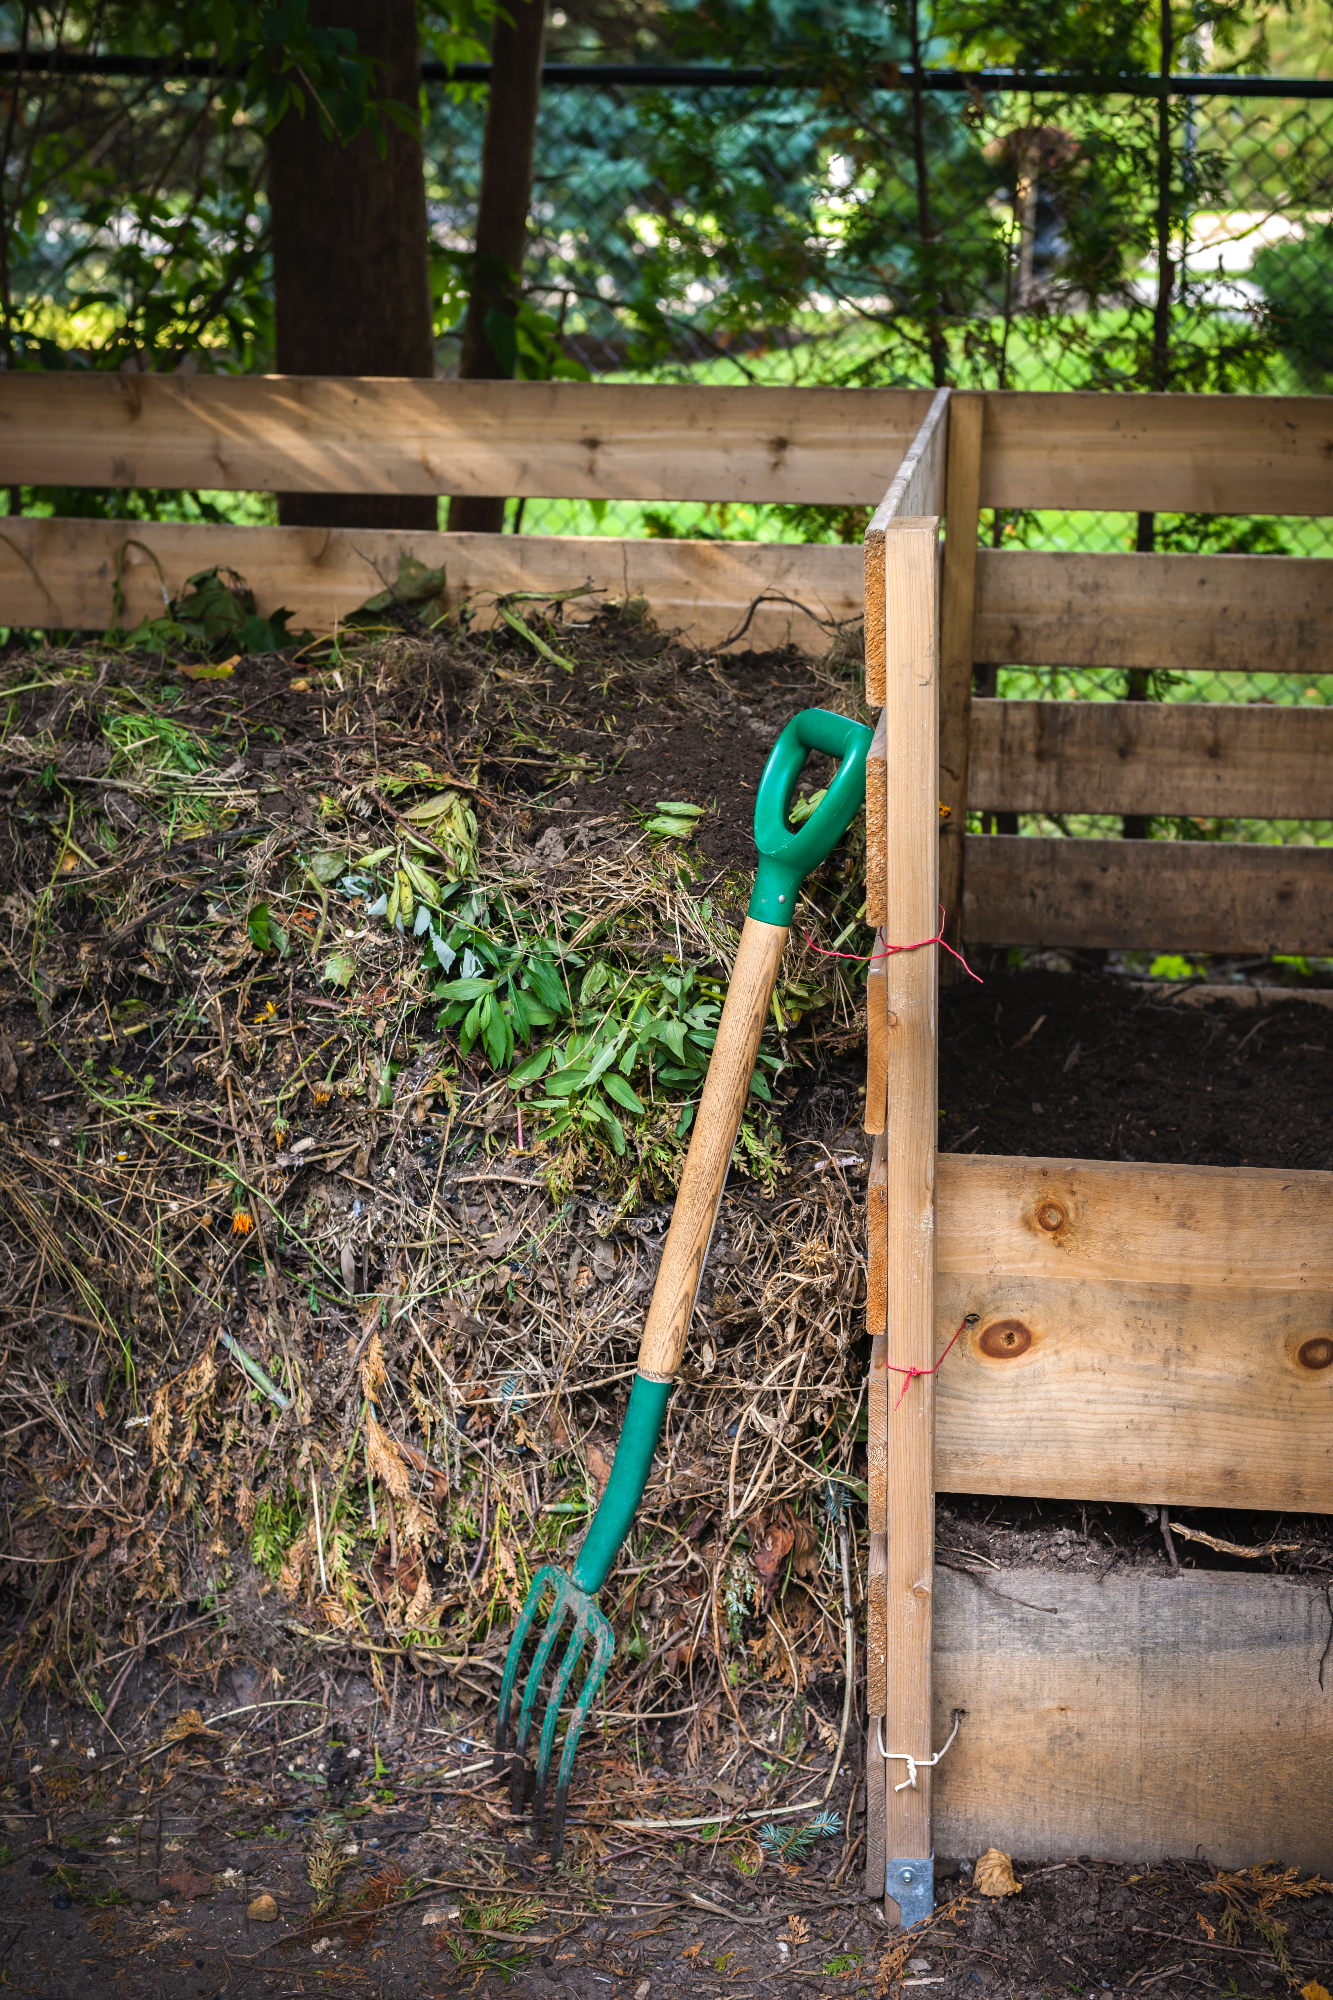 Kompostniki so lahko zelo uporabni za naše vrtove